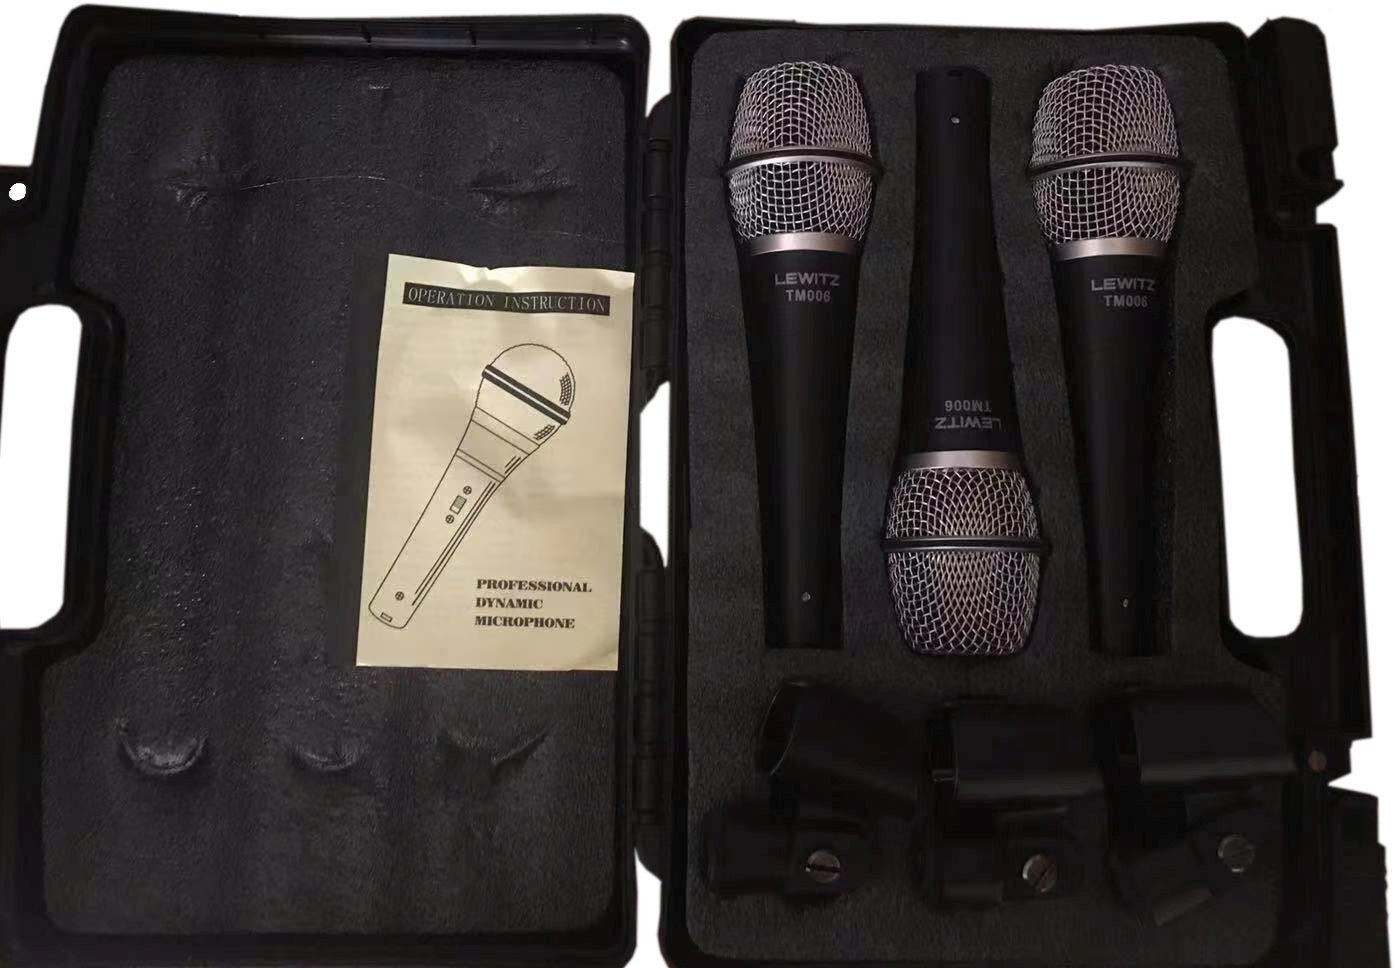 Vokální dynamický mikrofon Lewitz TM600 Vokální dynamický mikrofon